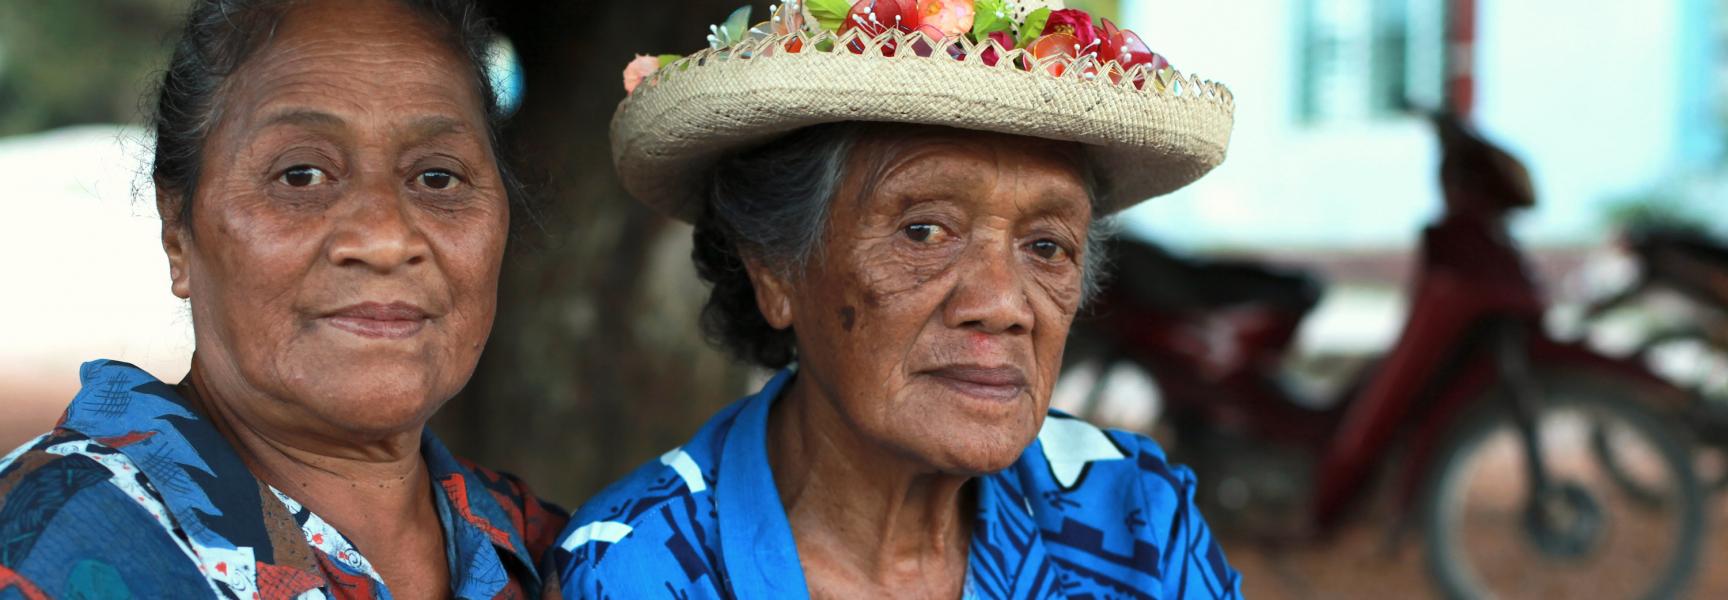 Women in the Cook Islands